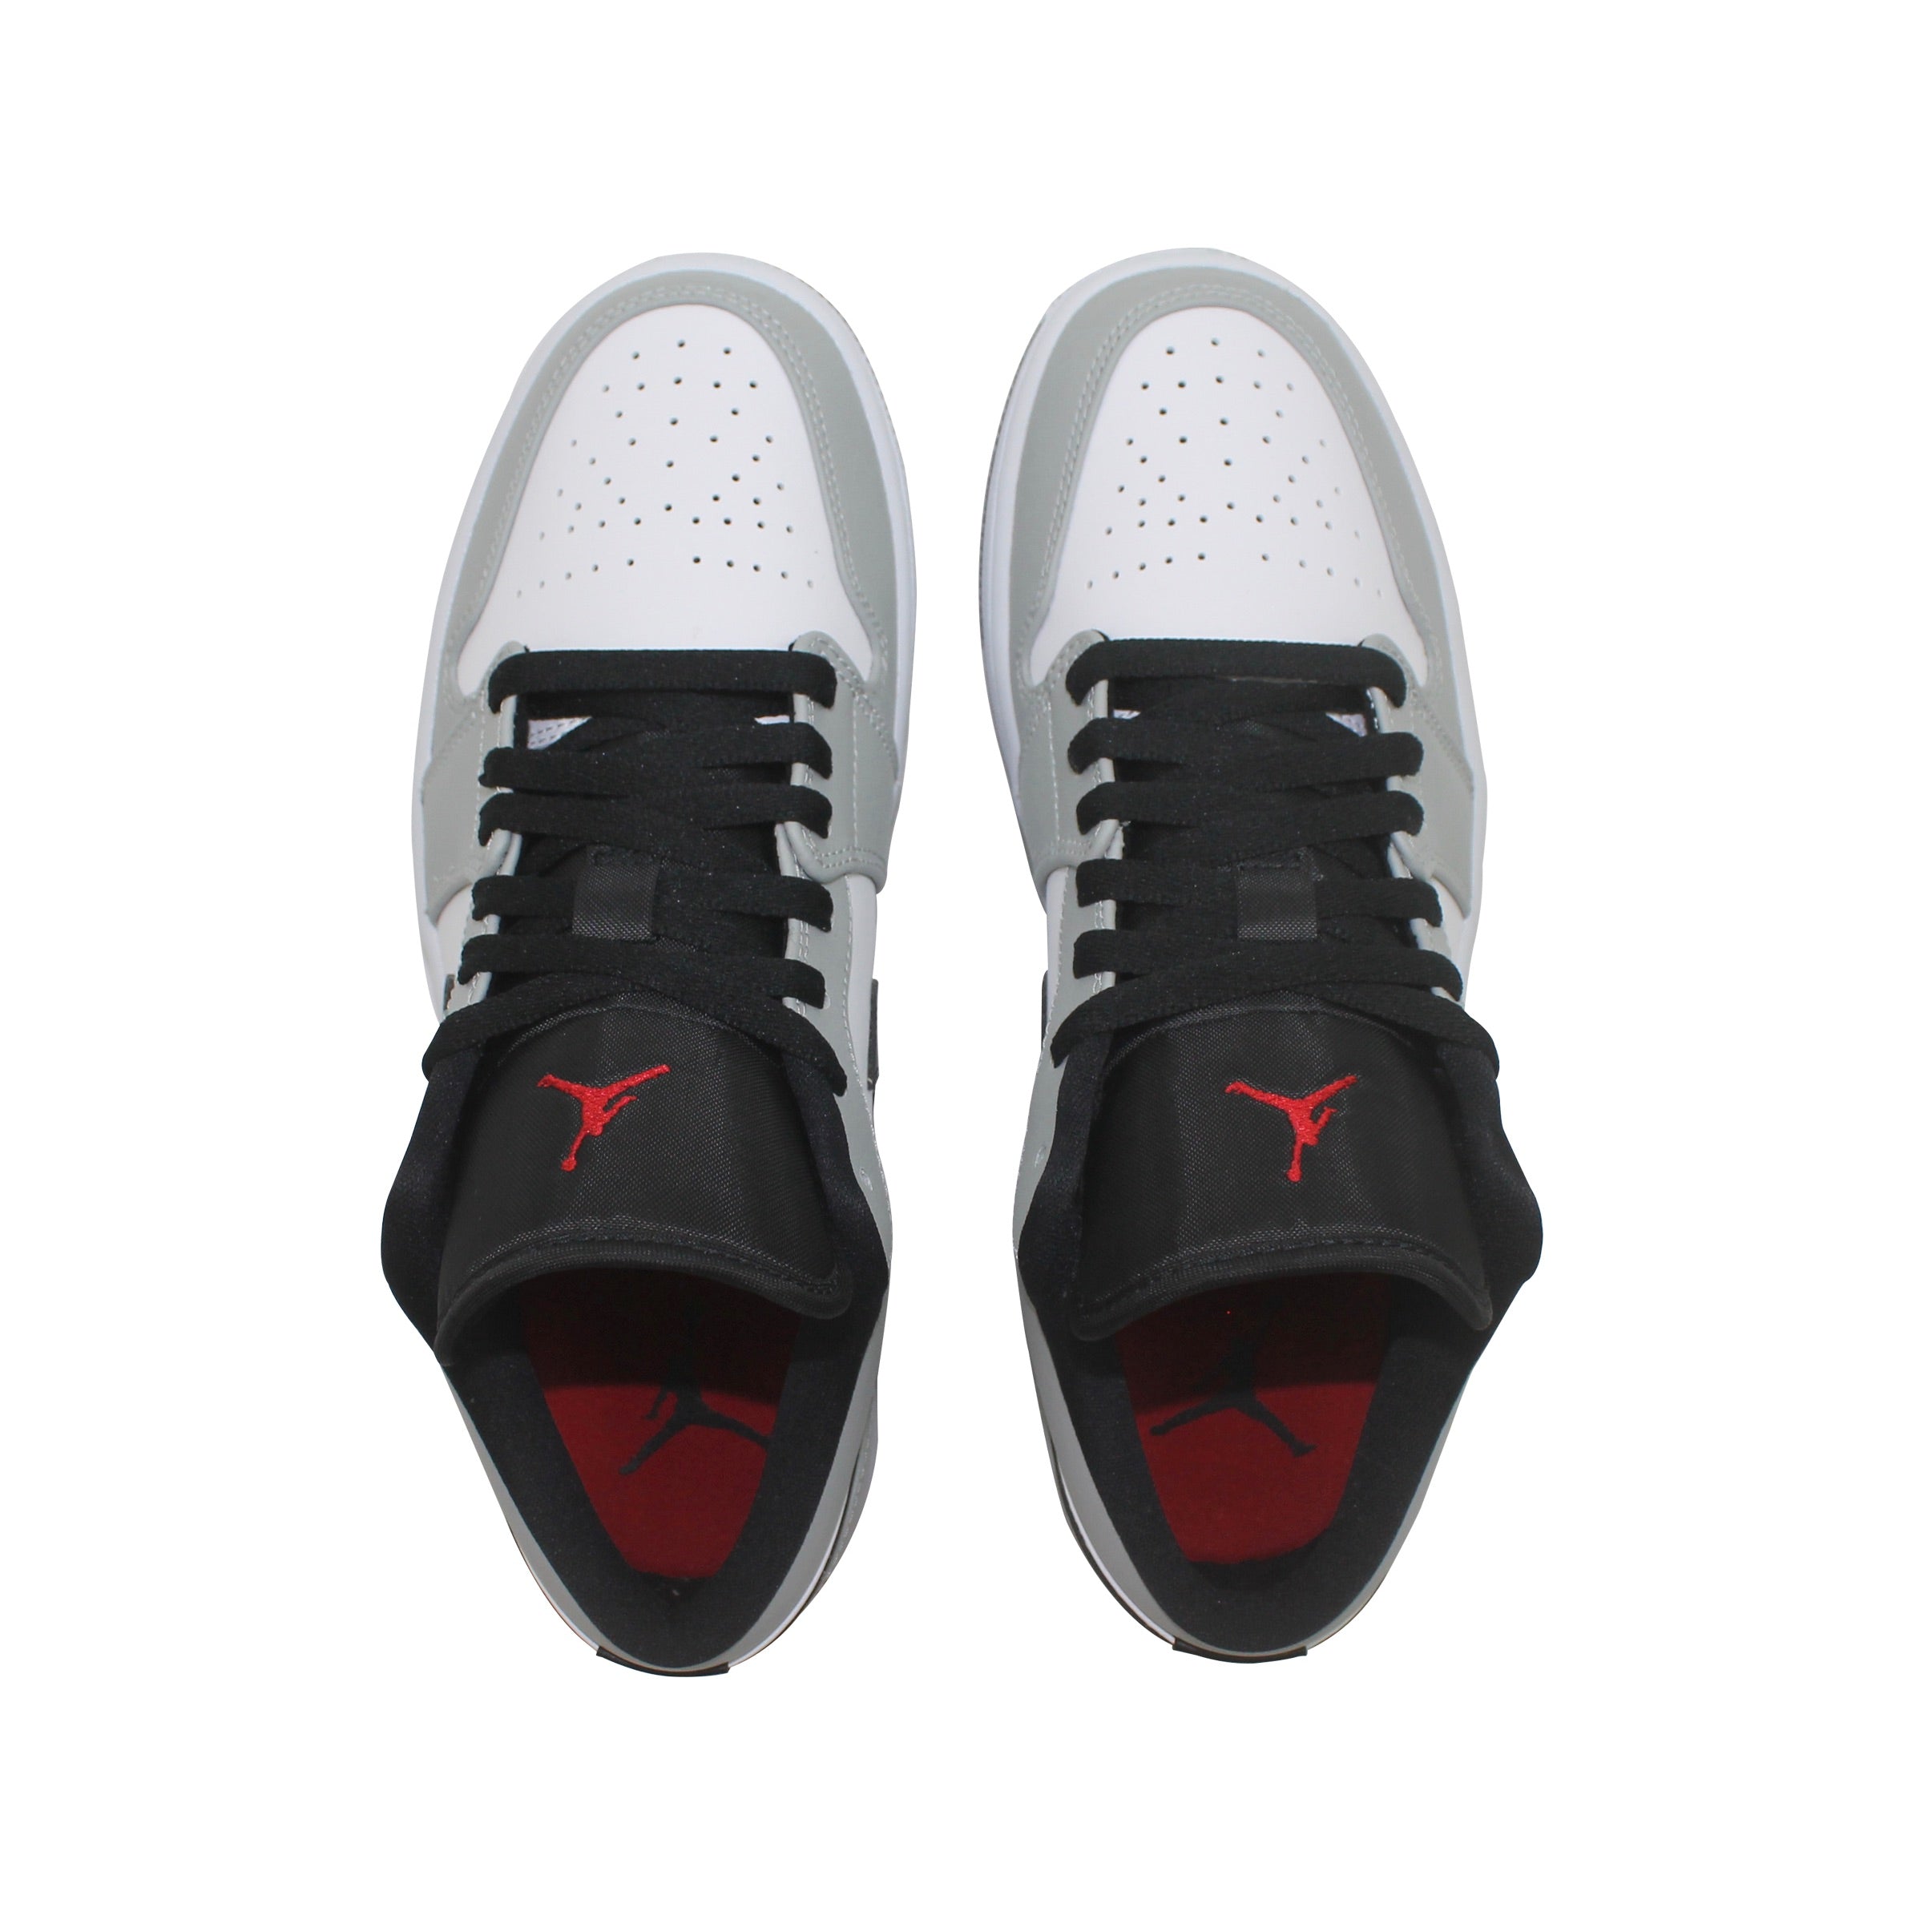 Nike Air Jordan 1 Low Rauchgrau